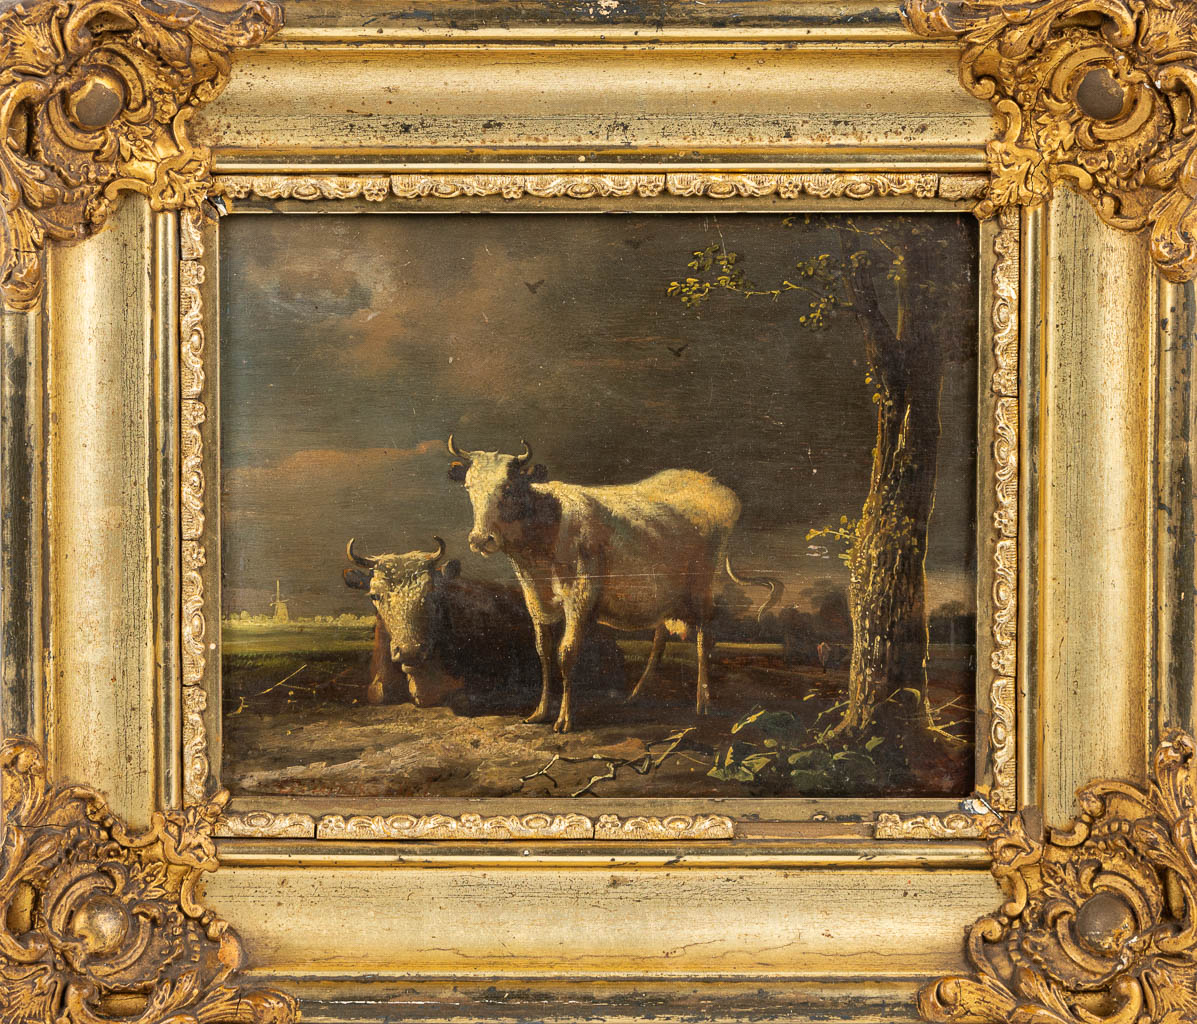 Jan II Baptist KOBELL (1778-1814) een schilderij van 2 koeien, olie op paneel. (20,5 x 16,5 cm)